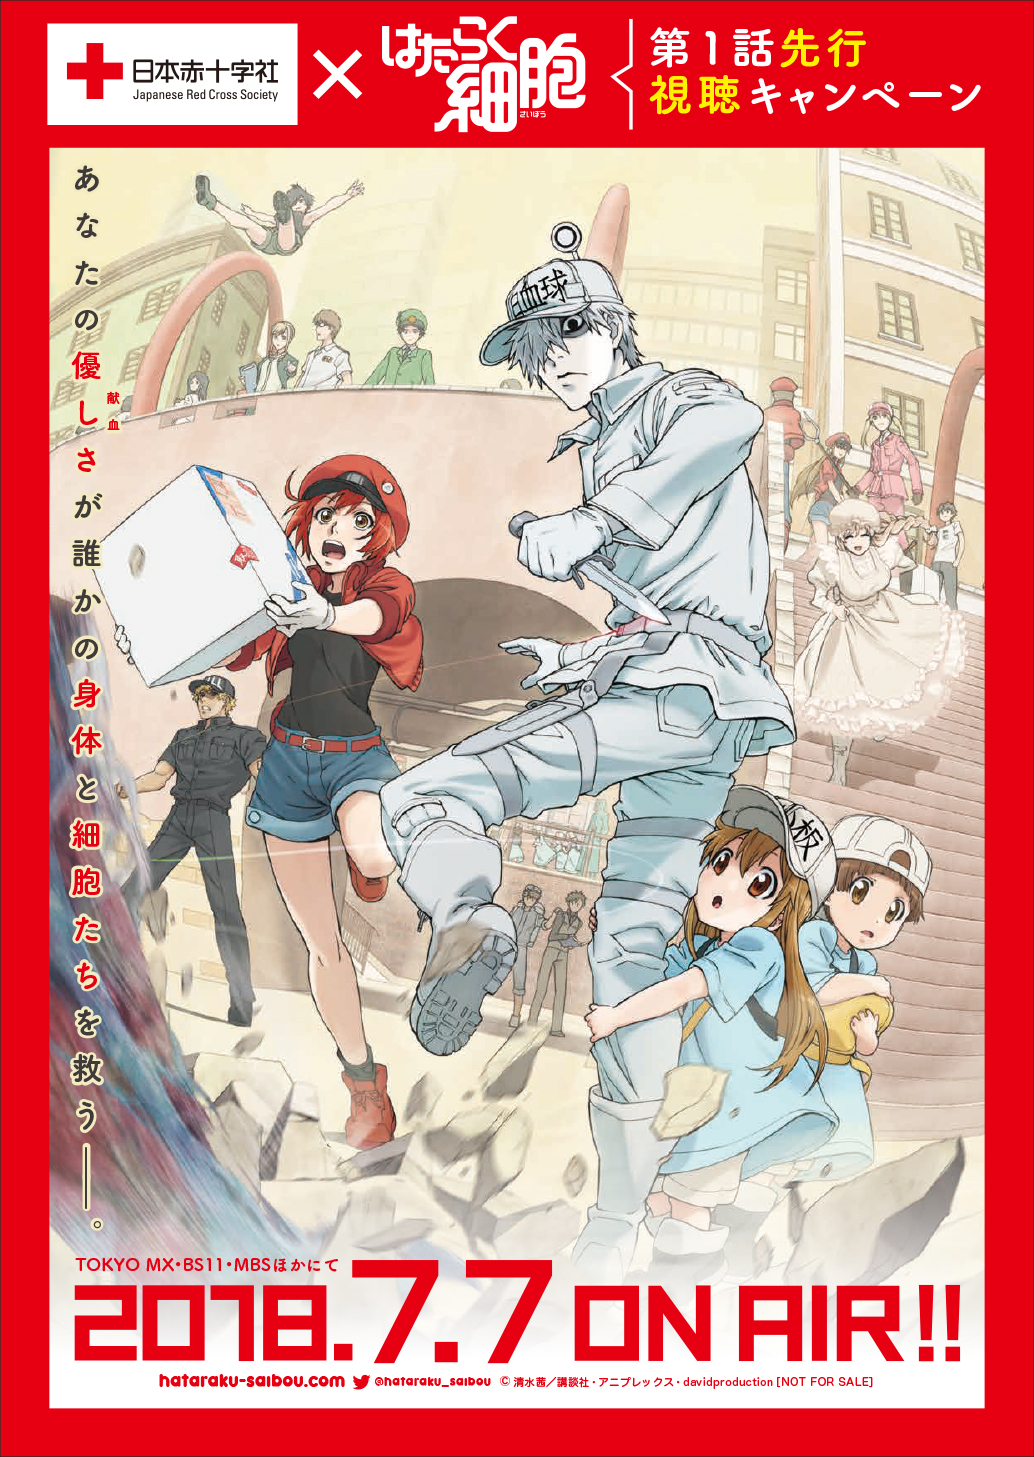 日本赤十字社 テレビアニメ はたらく細胞 第1話先行視聴キャンペーン実施開始 株式会社アニプレックスのプレスリリース